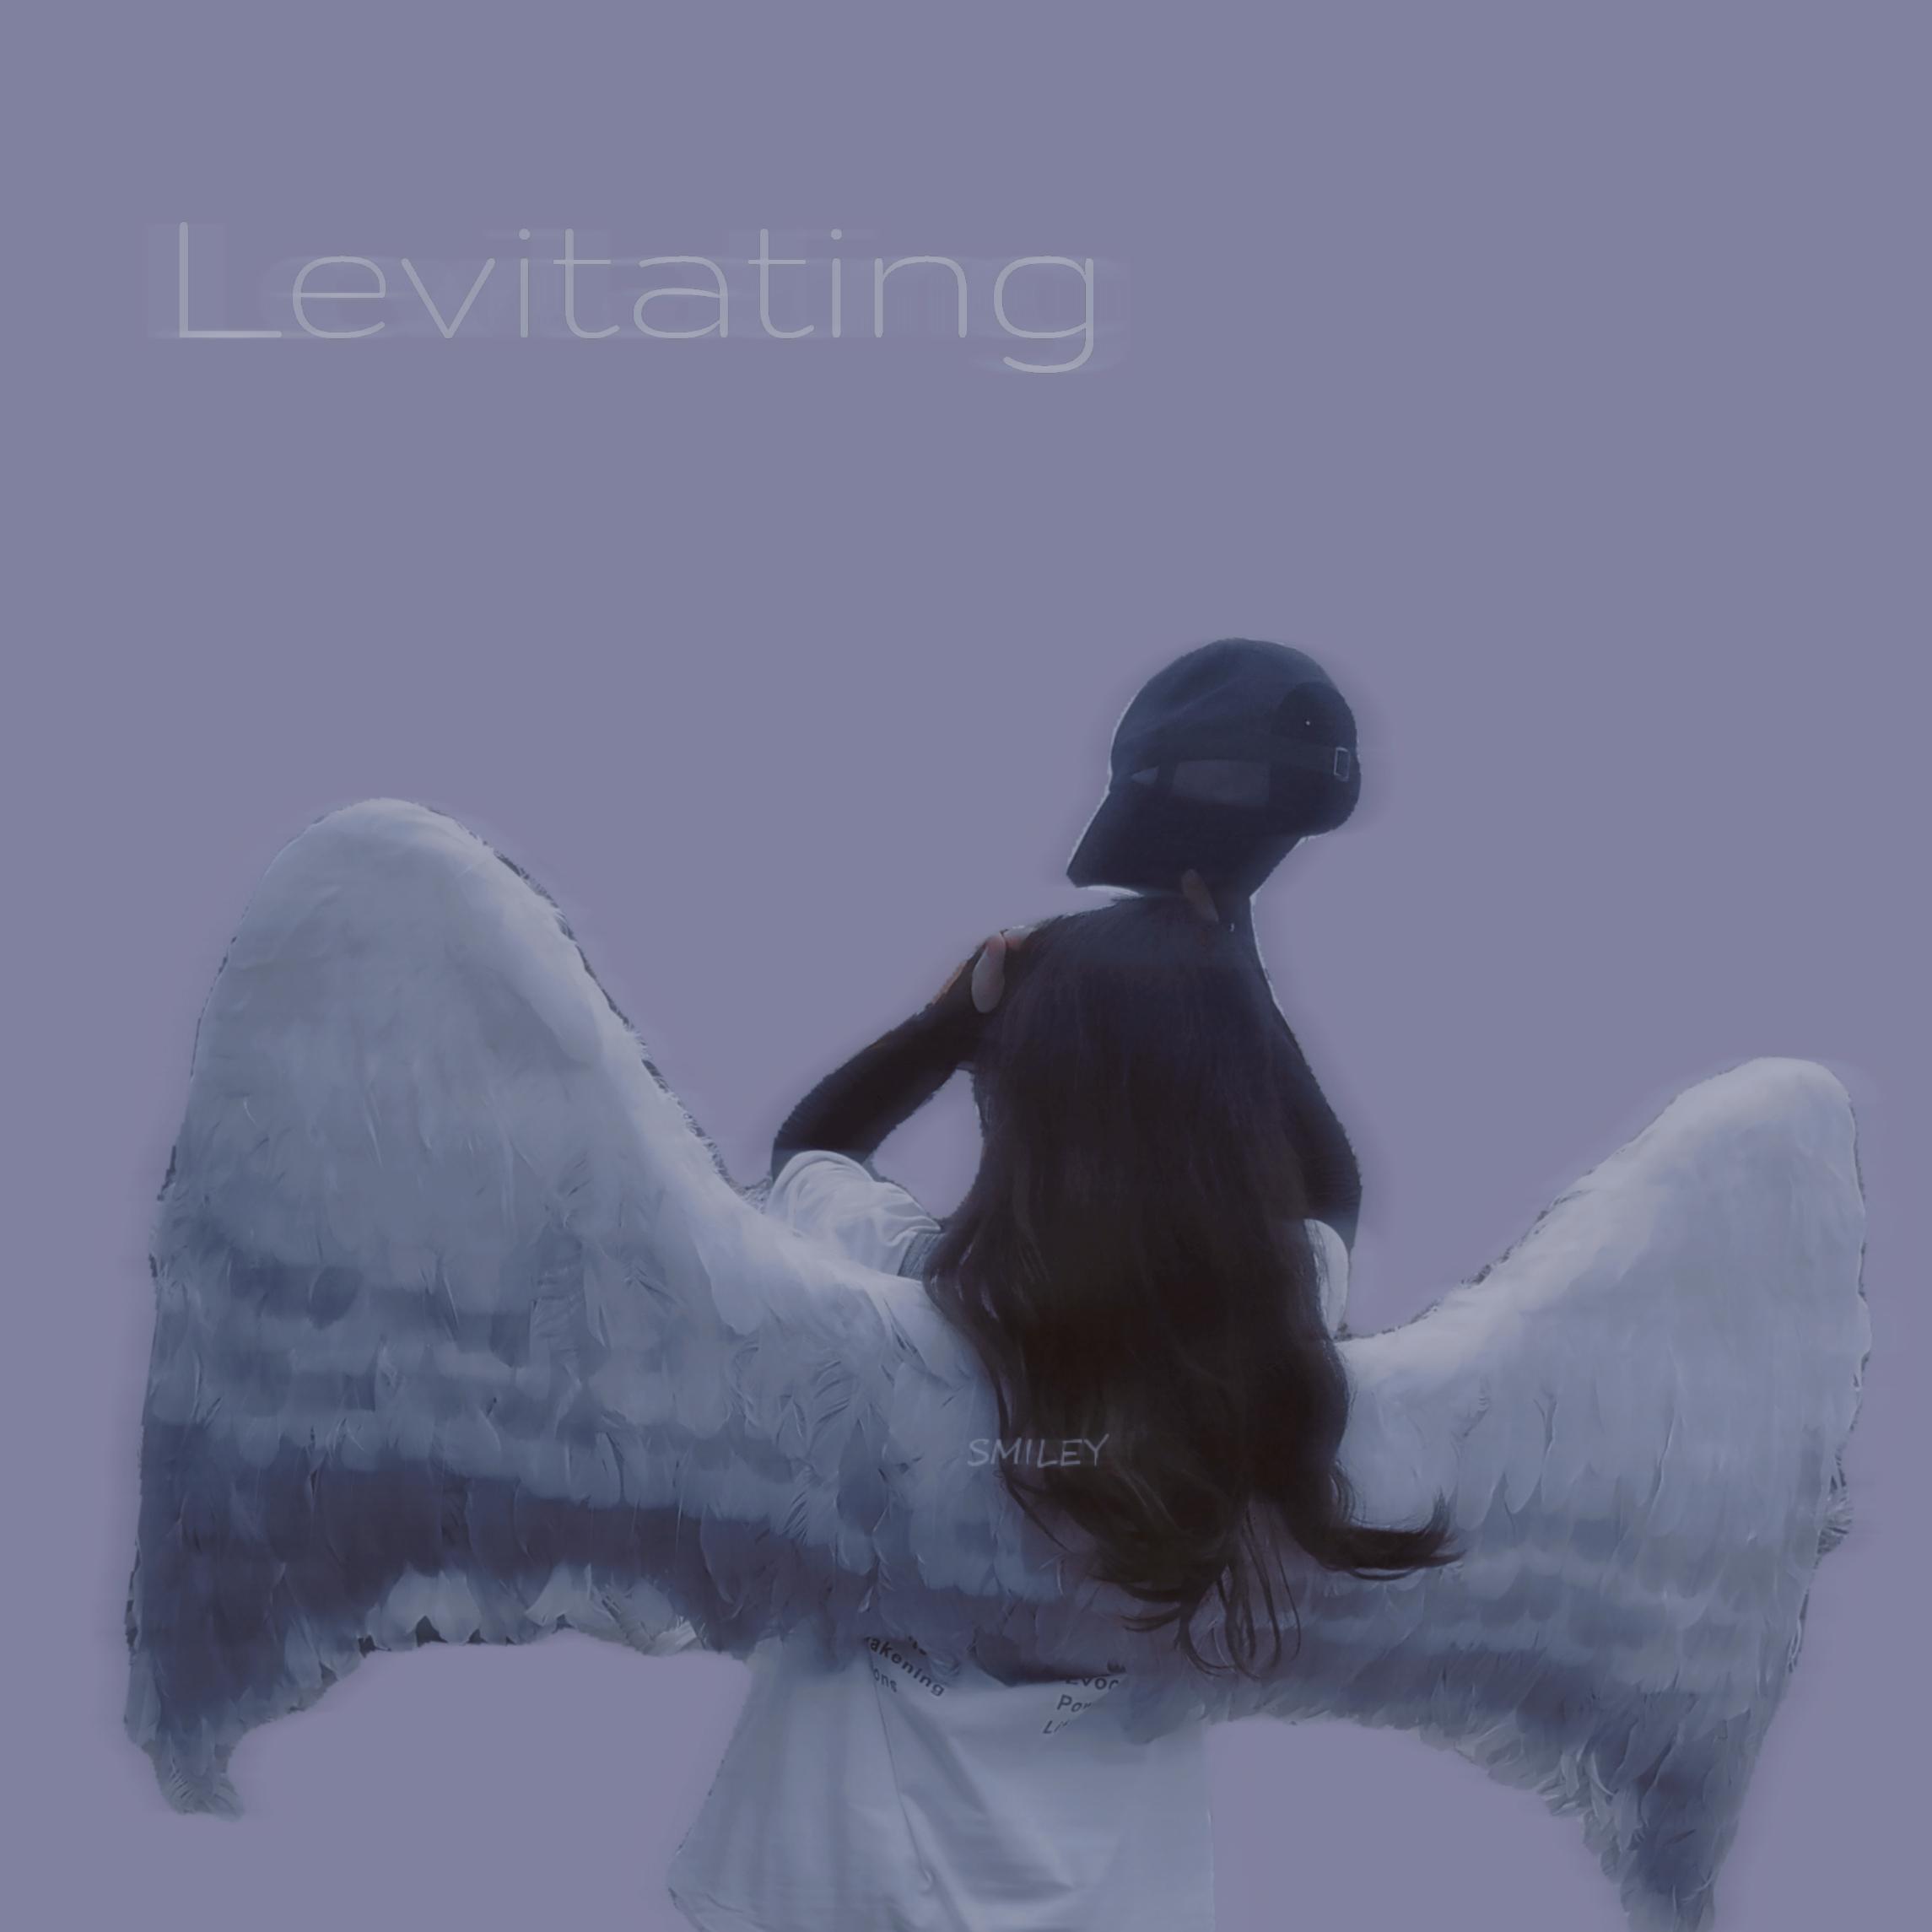 梨笑笑 - Levitating